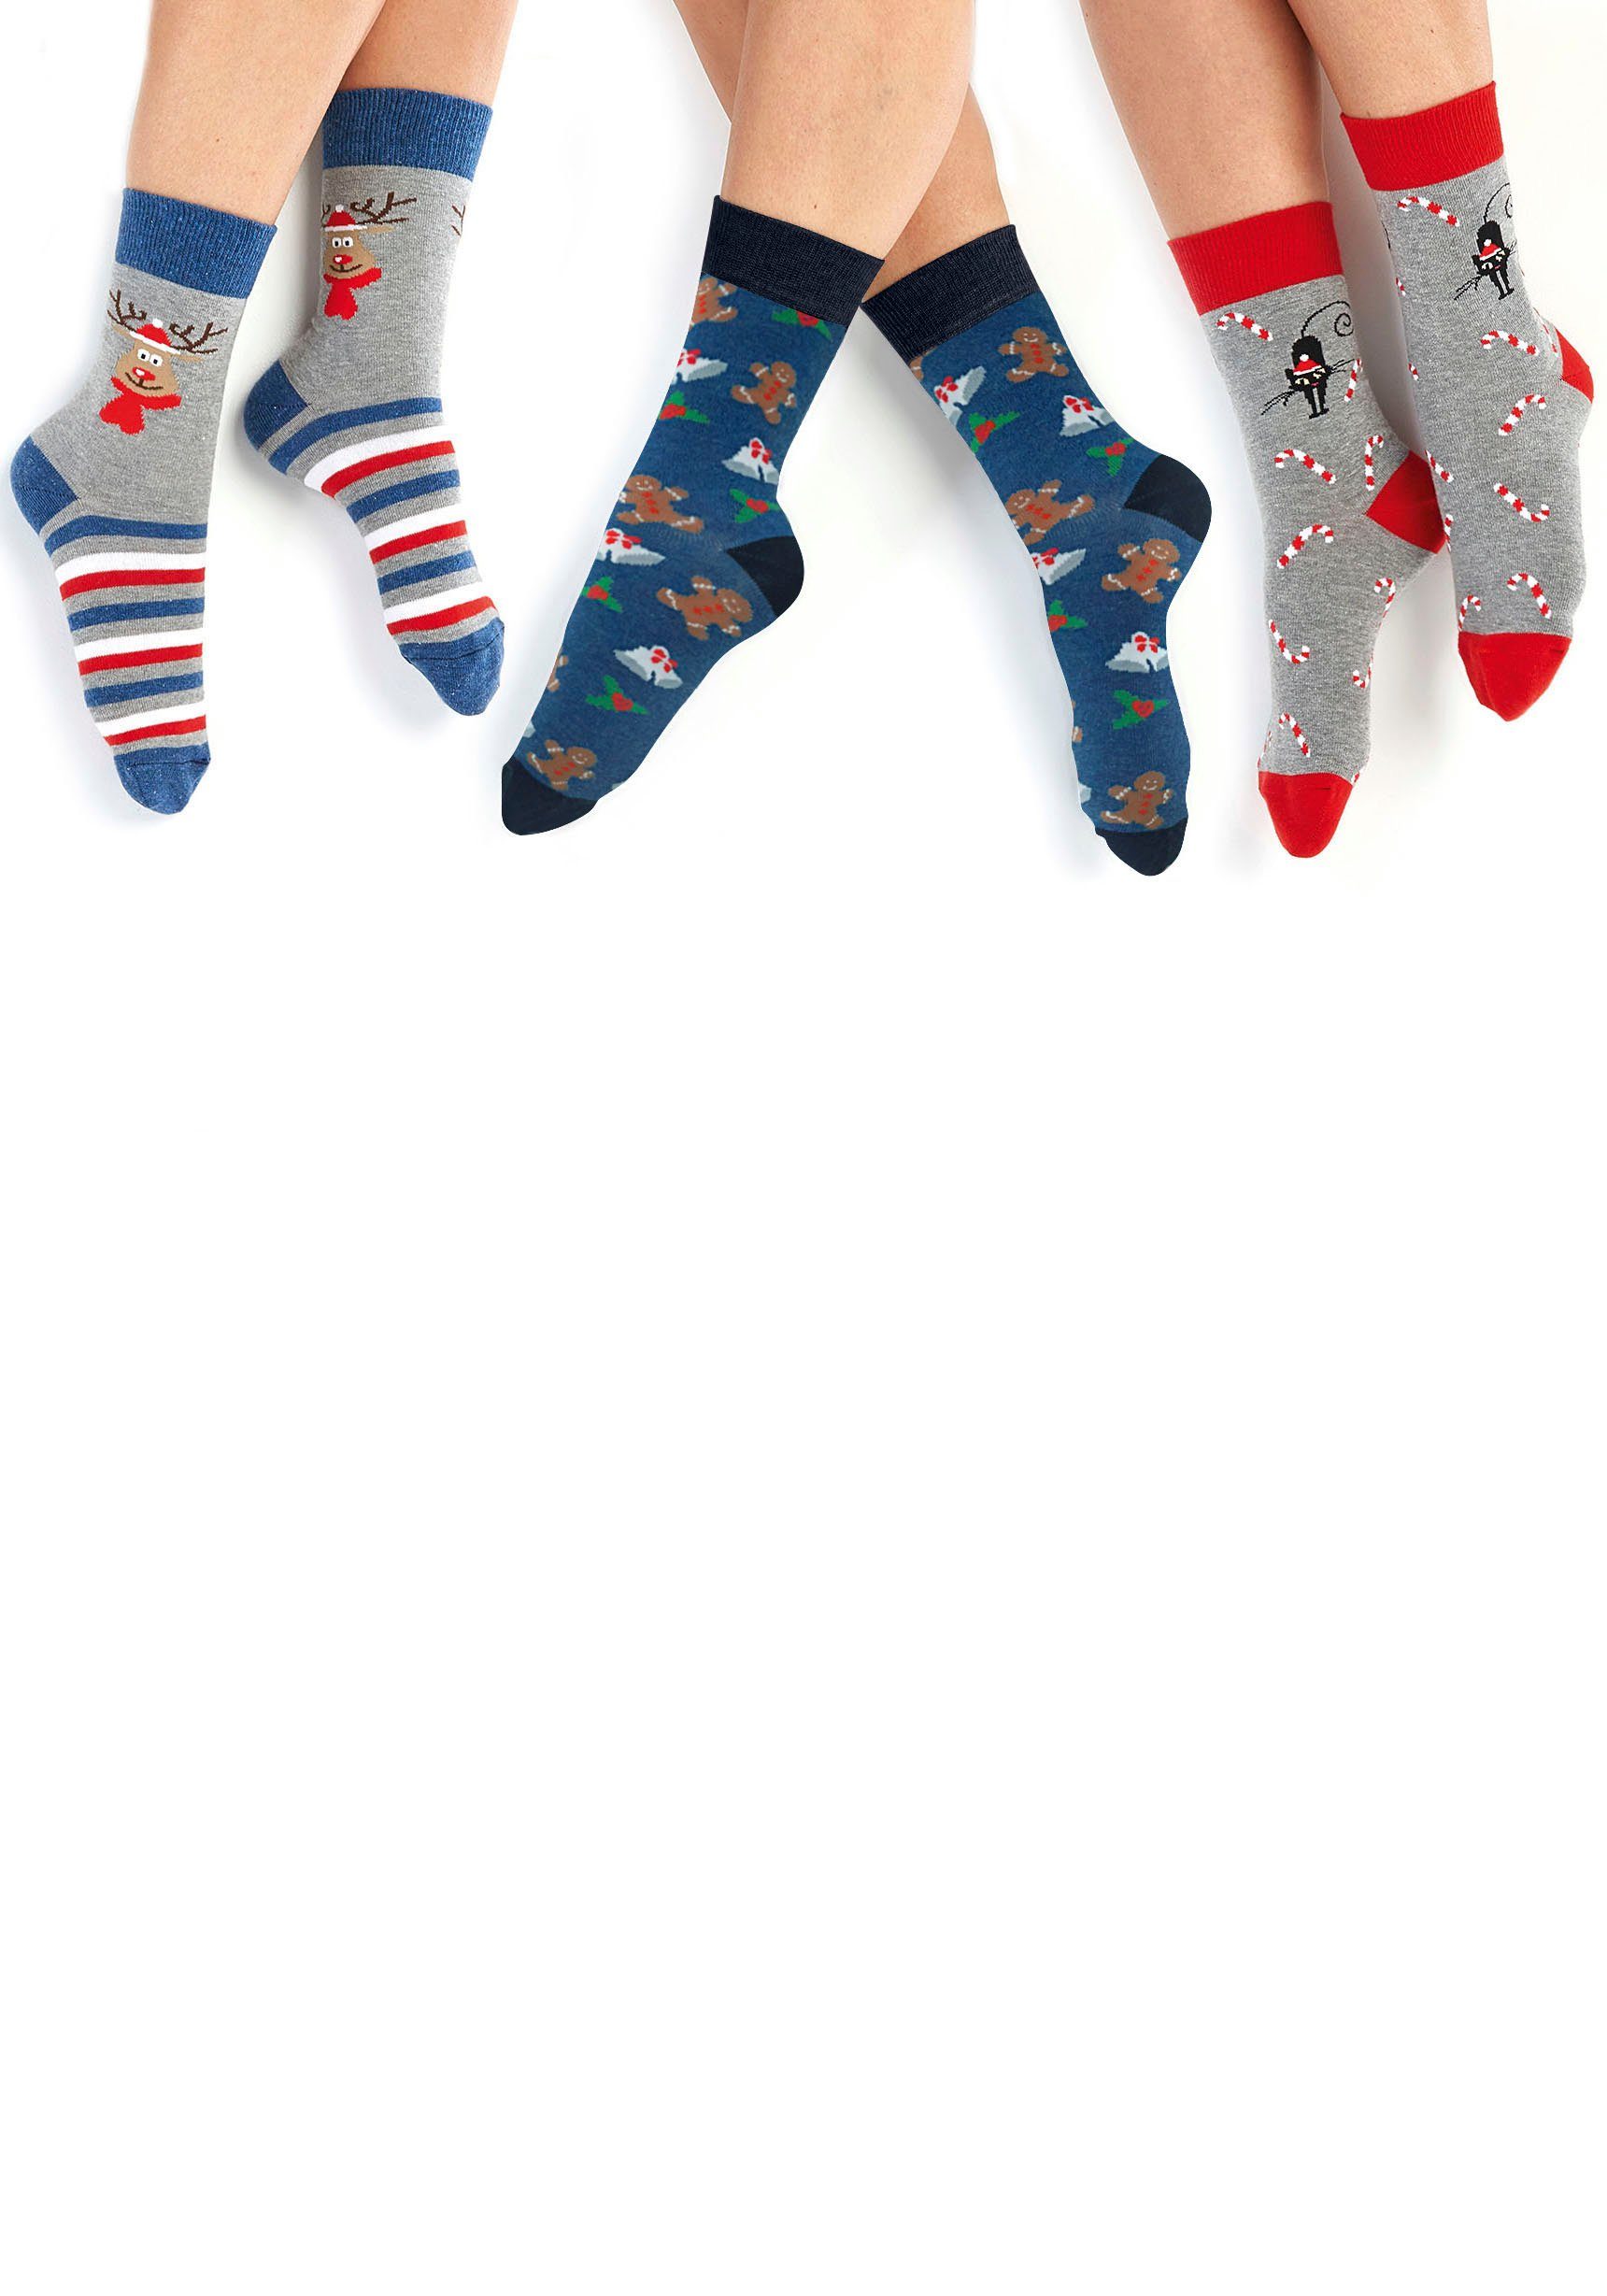 H.I.S Socken mit Weihnachts-Design jeans-grau-rot-gemustert (3-Paar)